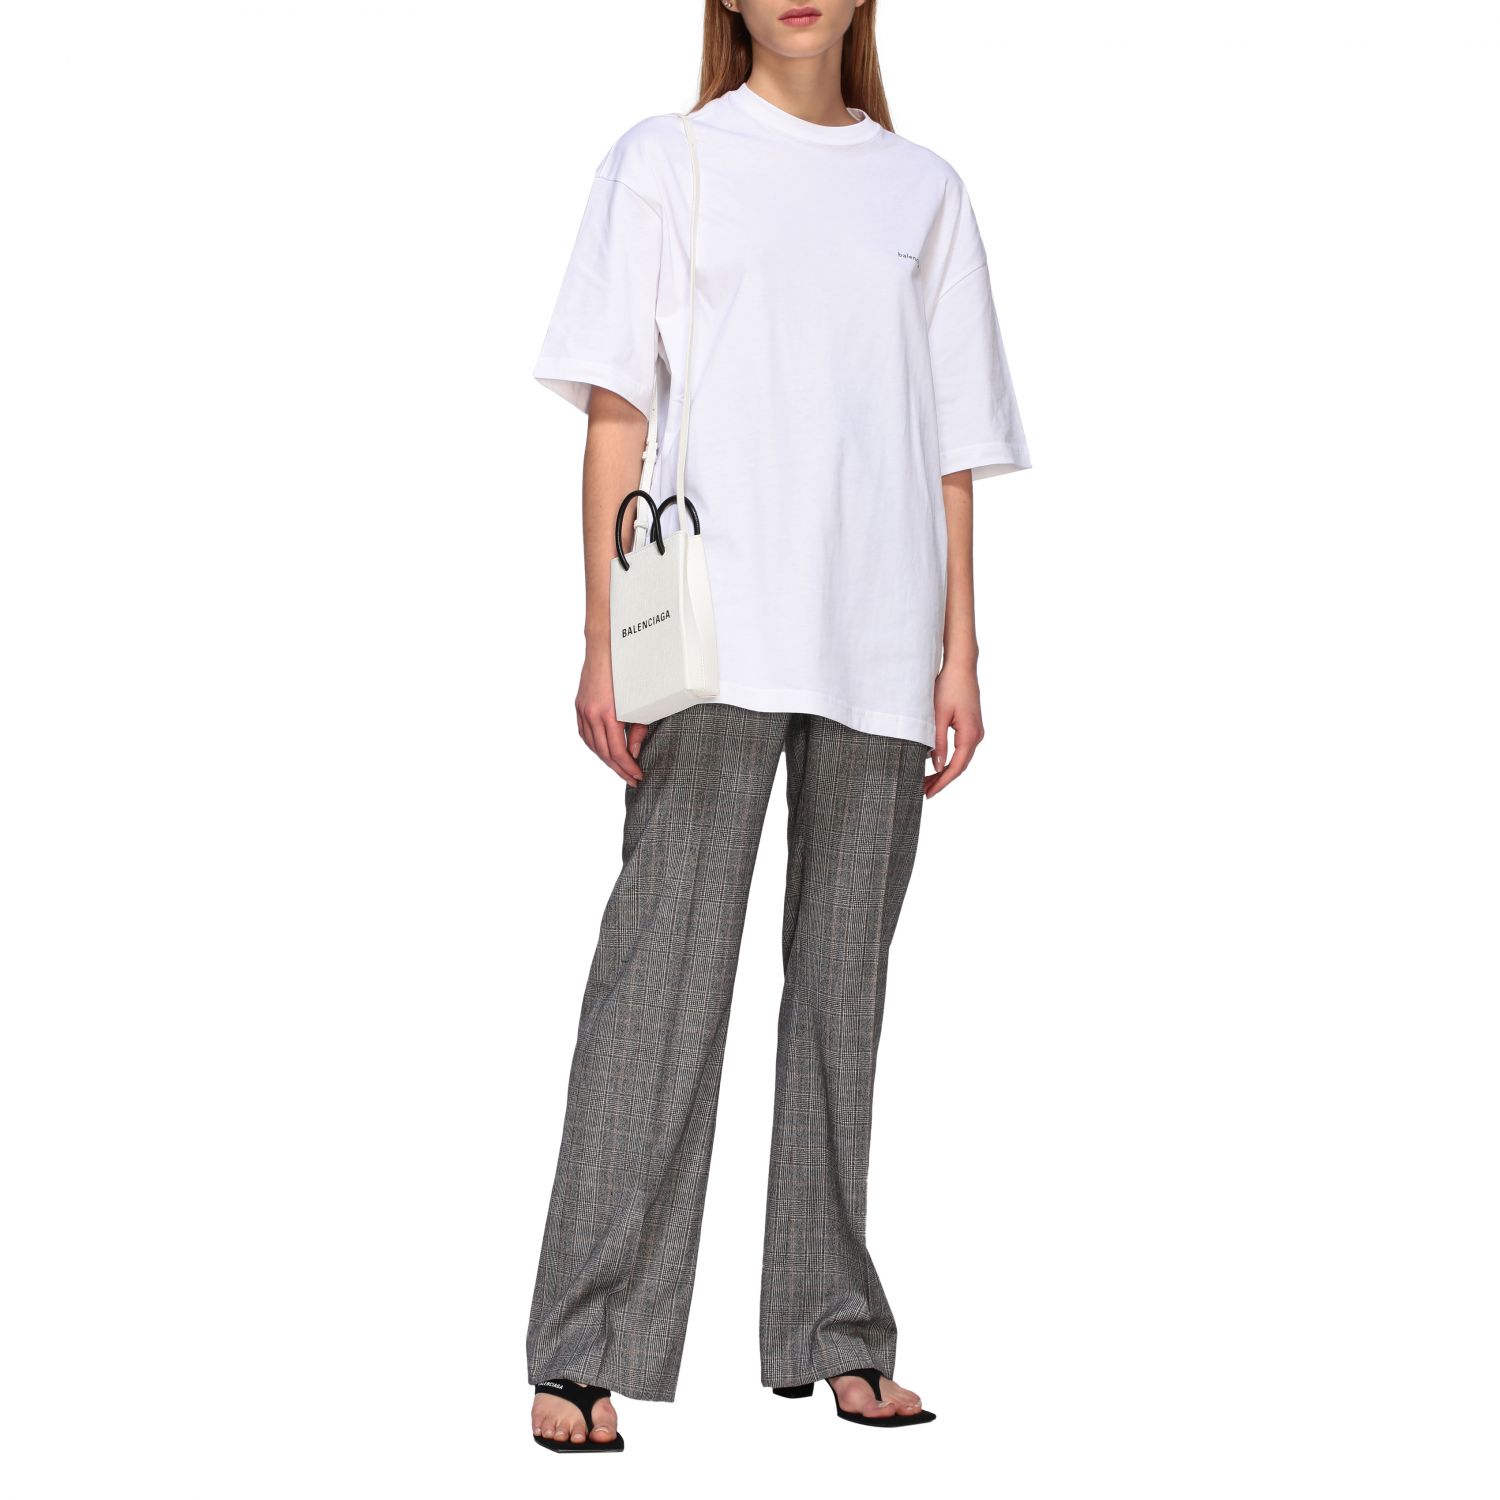 Balenciaga Outlet: mini bag for women - White | Balenciaga mini bag ...